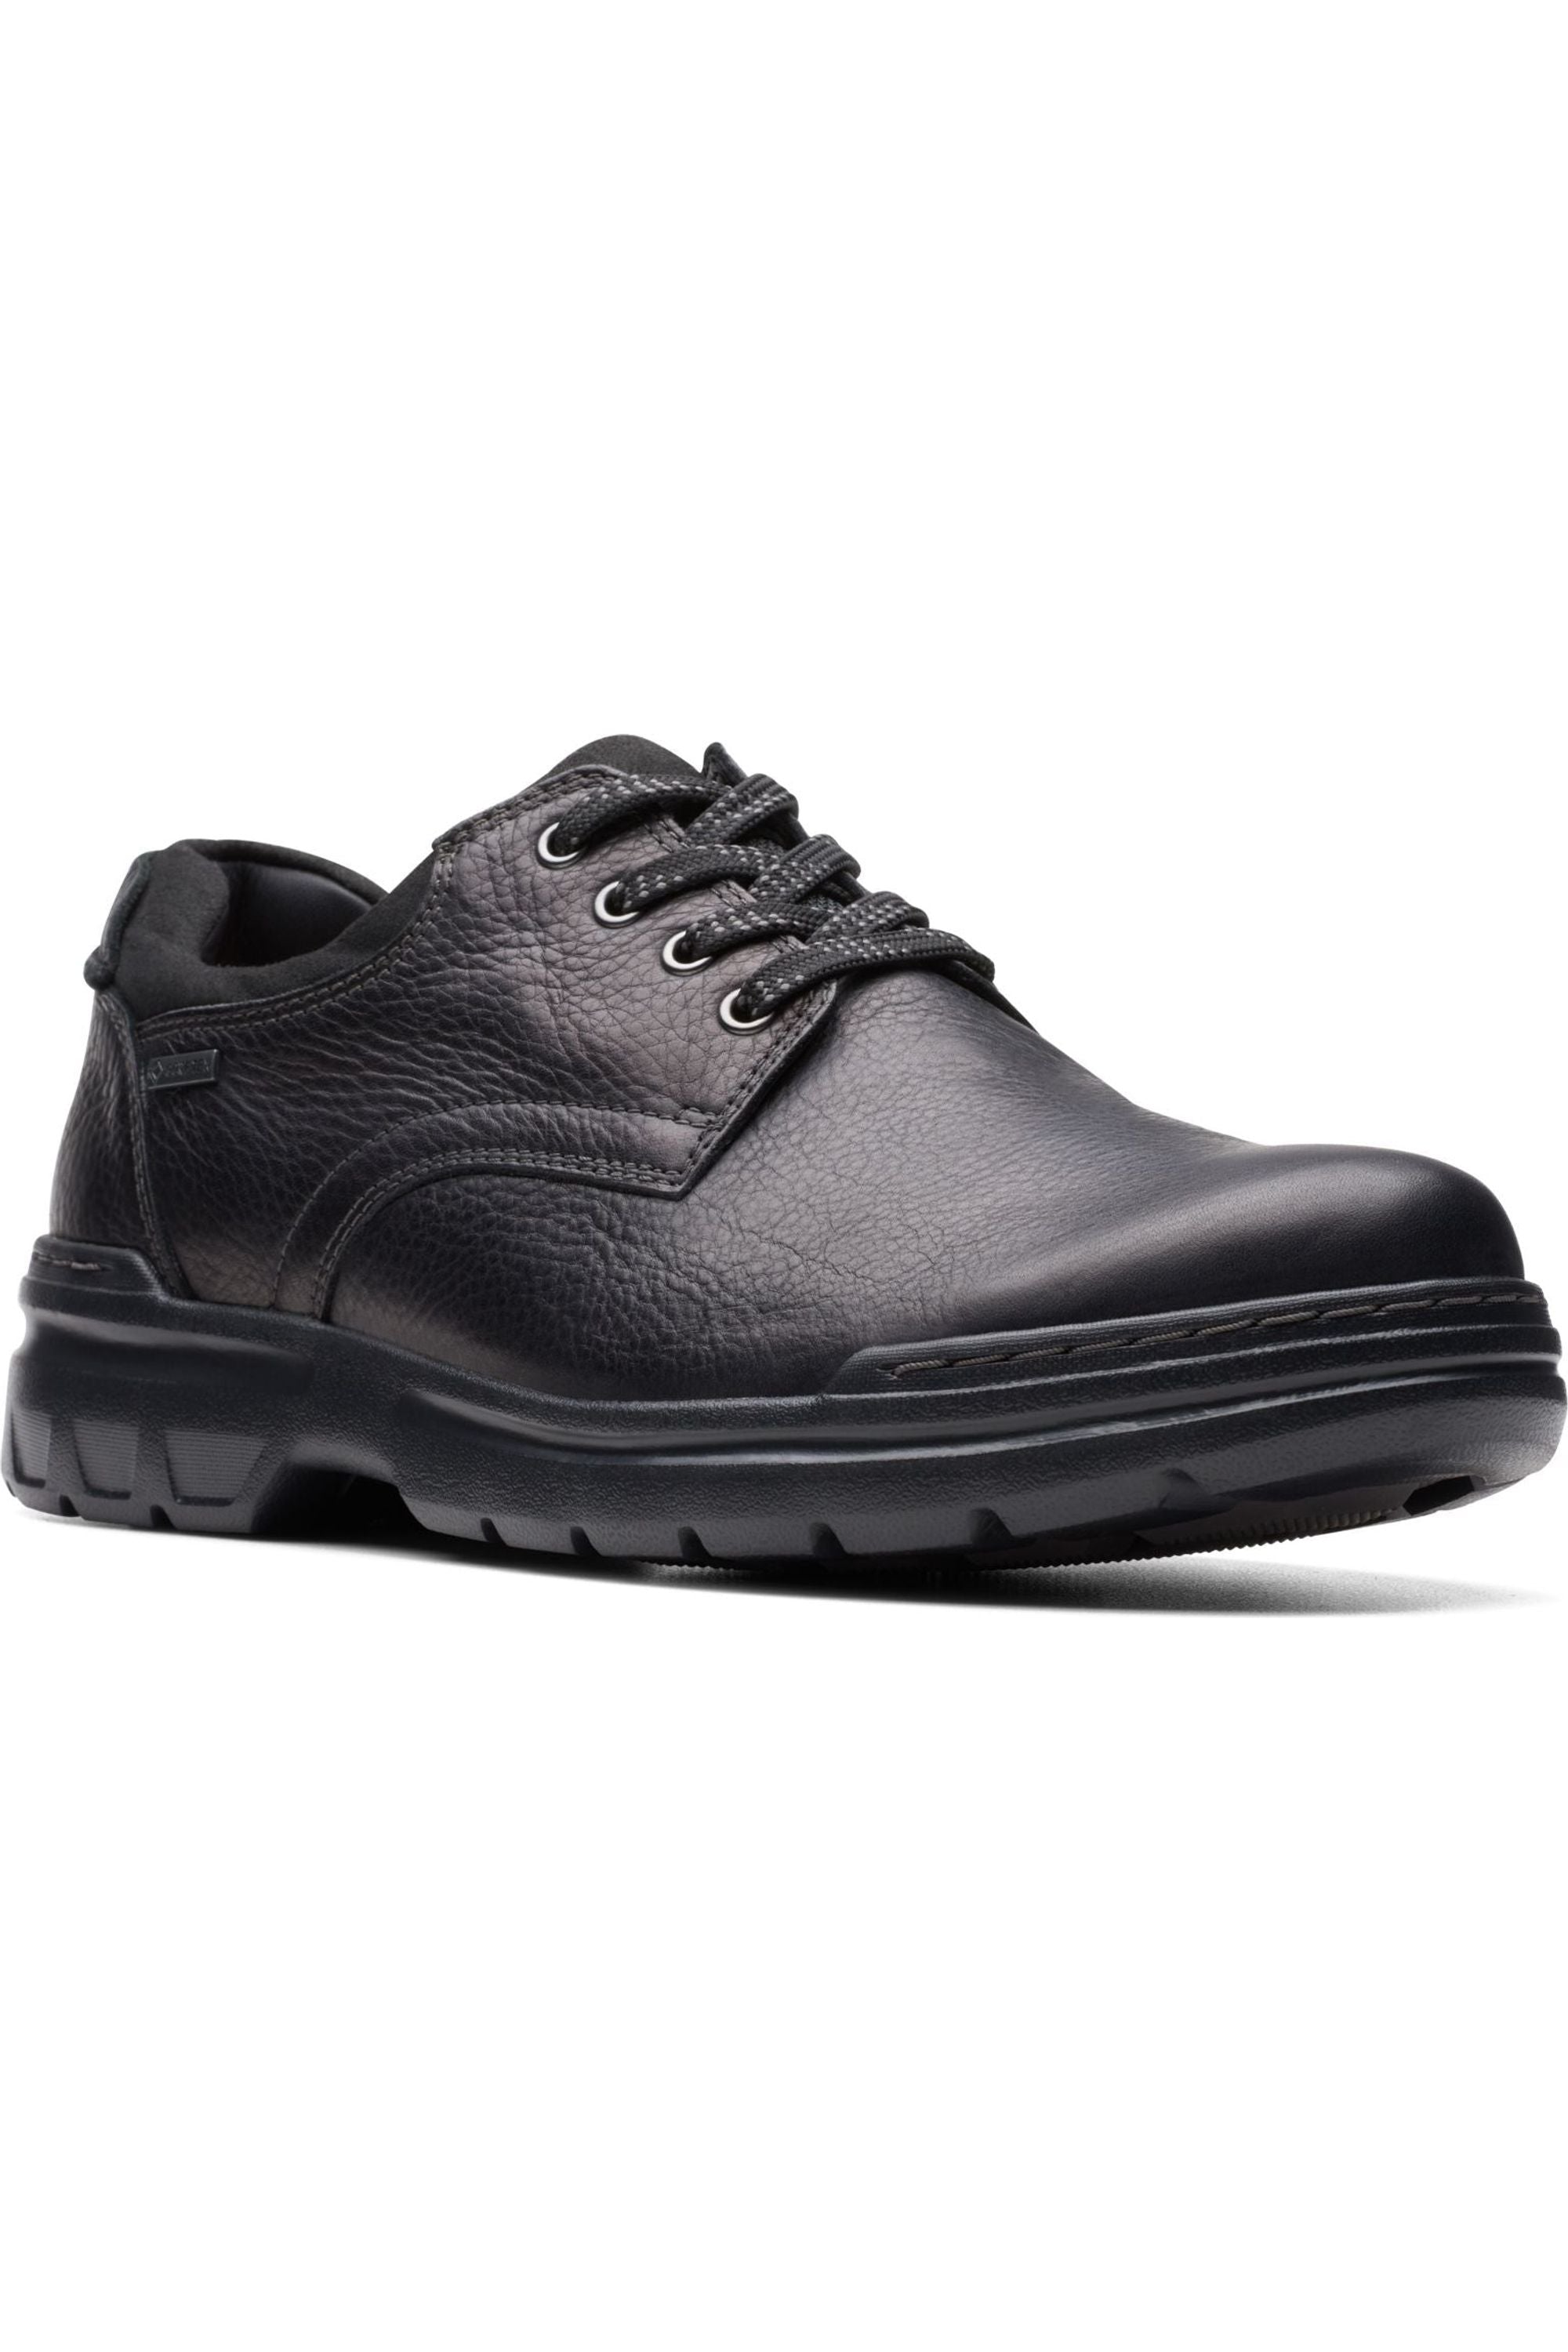 Clarks Mens Rockie WalkGTX waterproof shoe in black leather